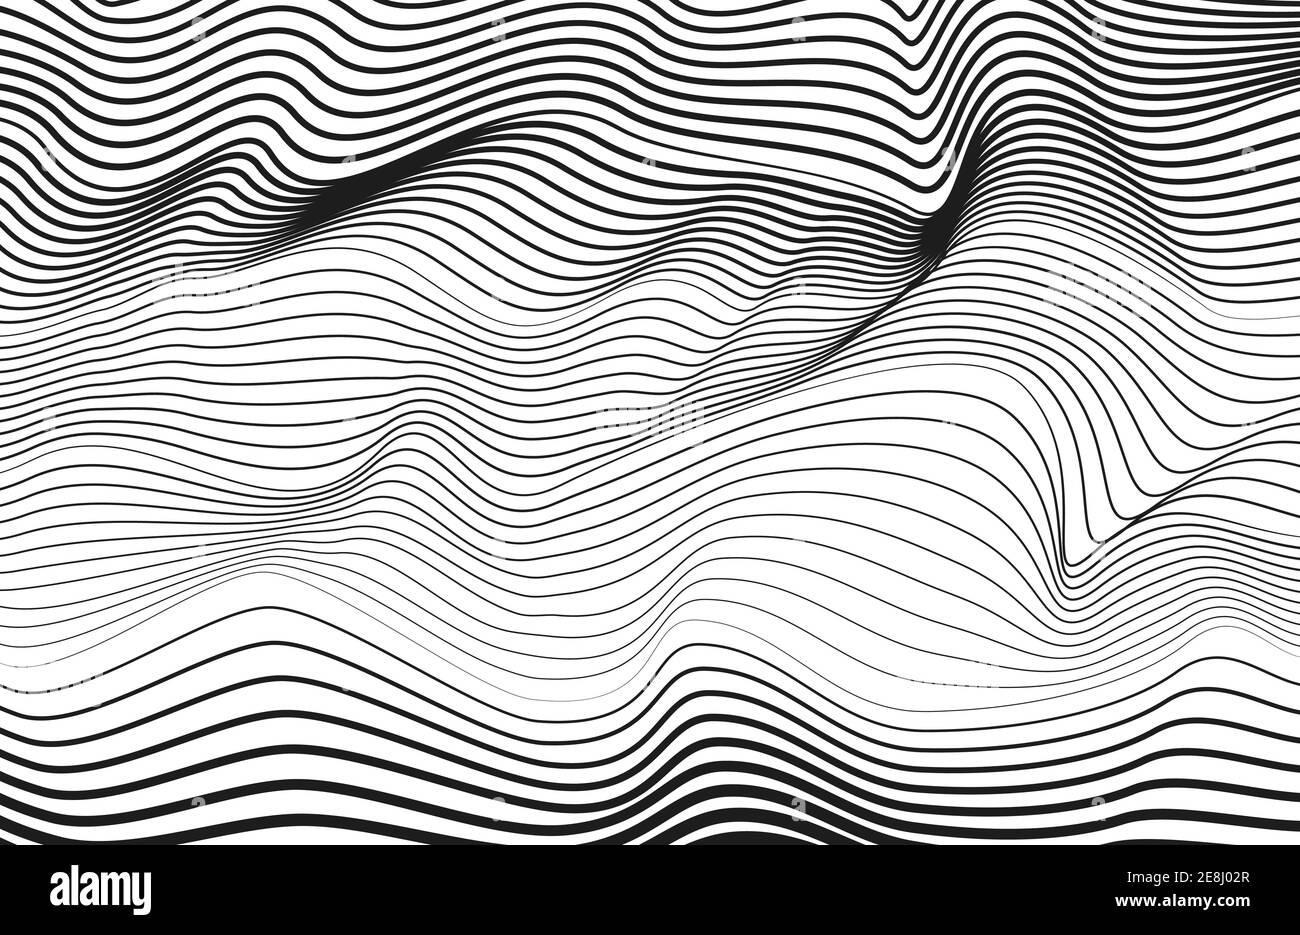 Abstraktes, monochromes Linienkunstdesign. Schwarze Kurven, weißer Hintergrund. Vektor-Technologie Streifenmuster. Radio, Schallwellen Konzept. EPS10 Stock Vektor